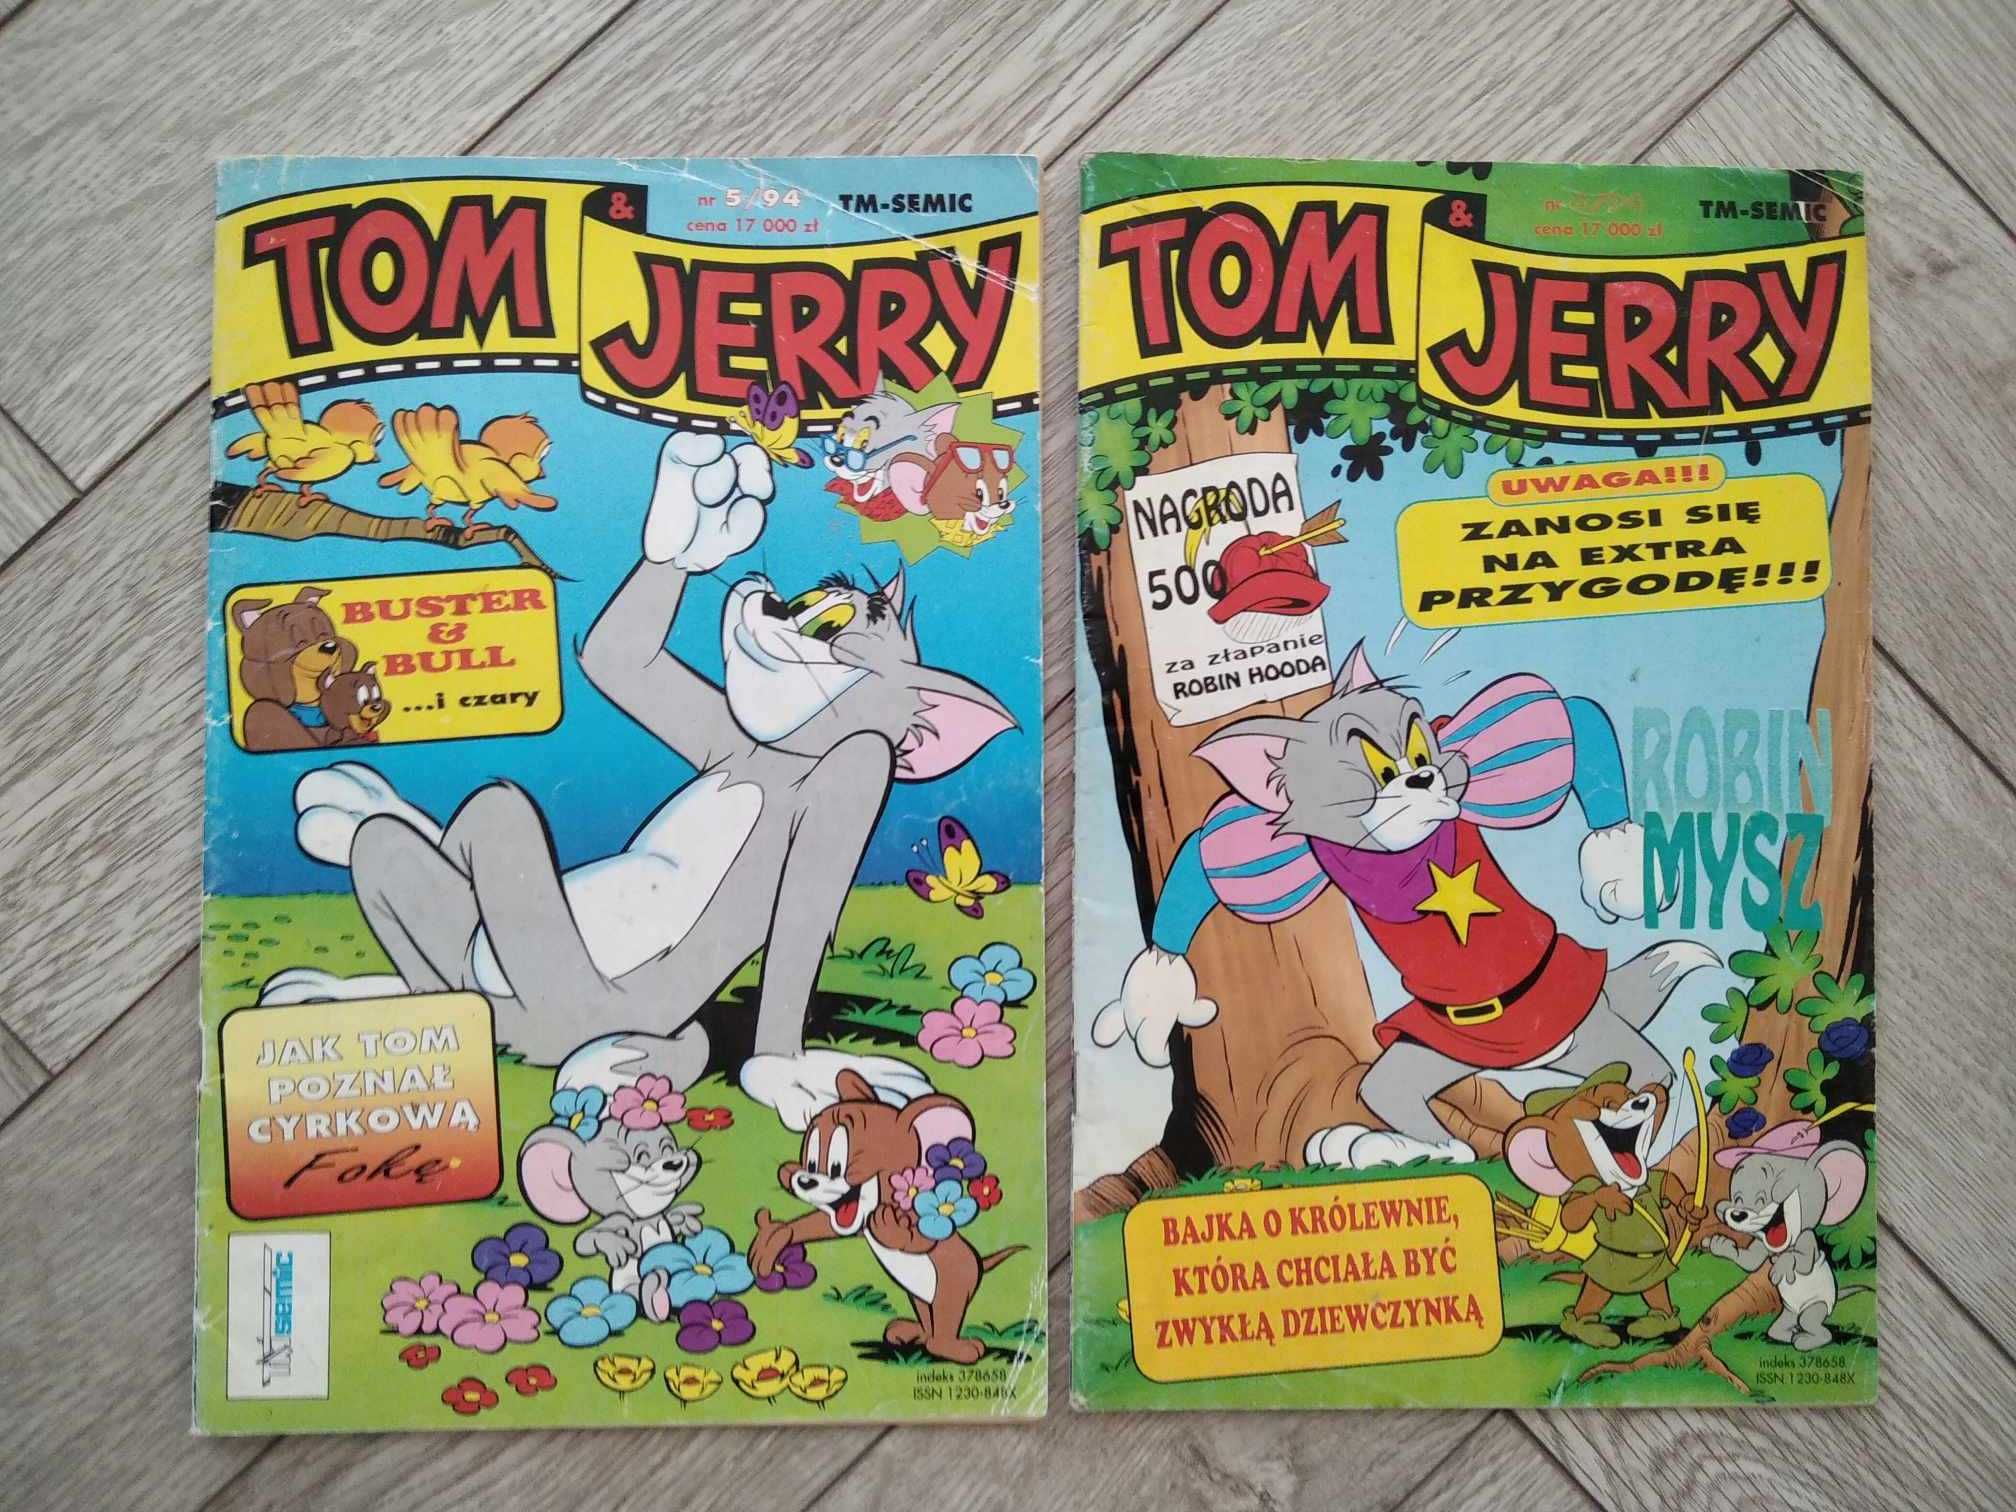 Tom & Jerry 94, TM-Semic, 8 szt.